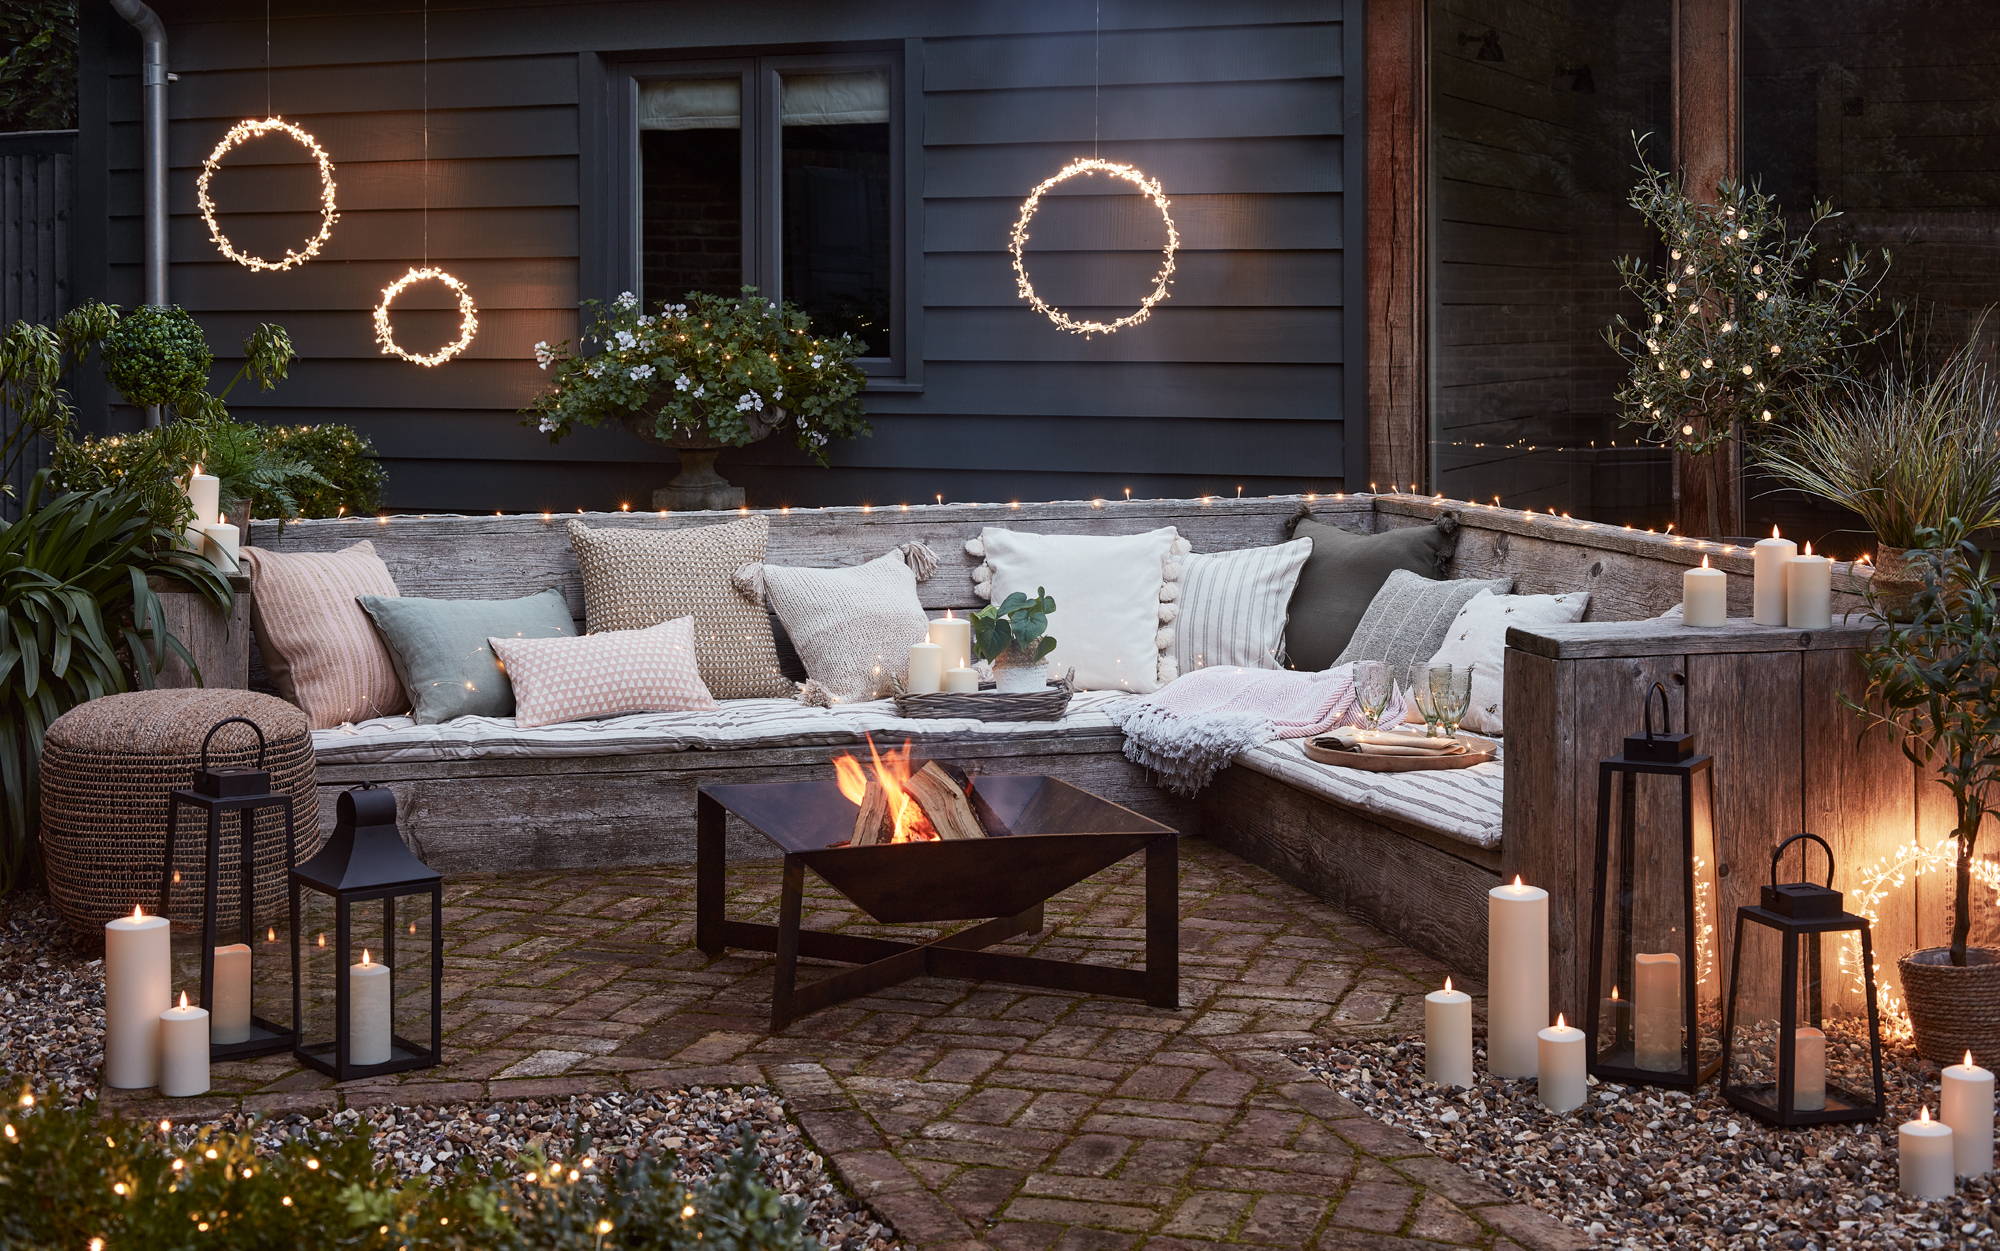 Ein Sitzbereich im Garten dekoriert mit LED Kerzen, Laternen und leuchtenden Kreisen mit einer Feuerschale im Vordergrund